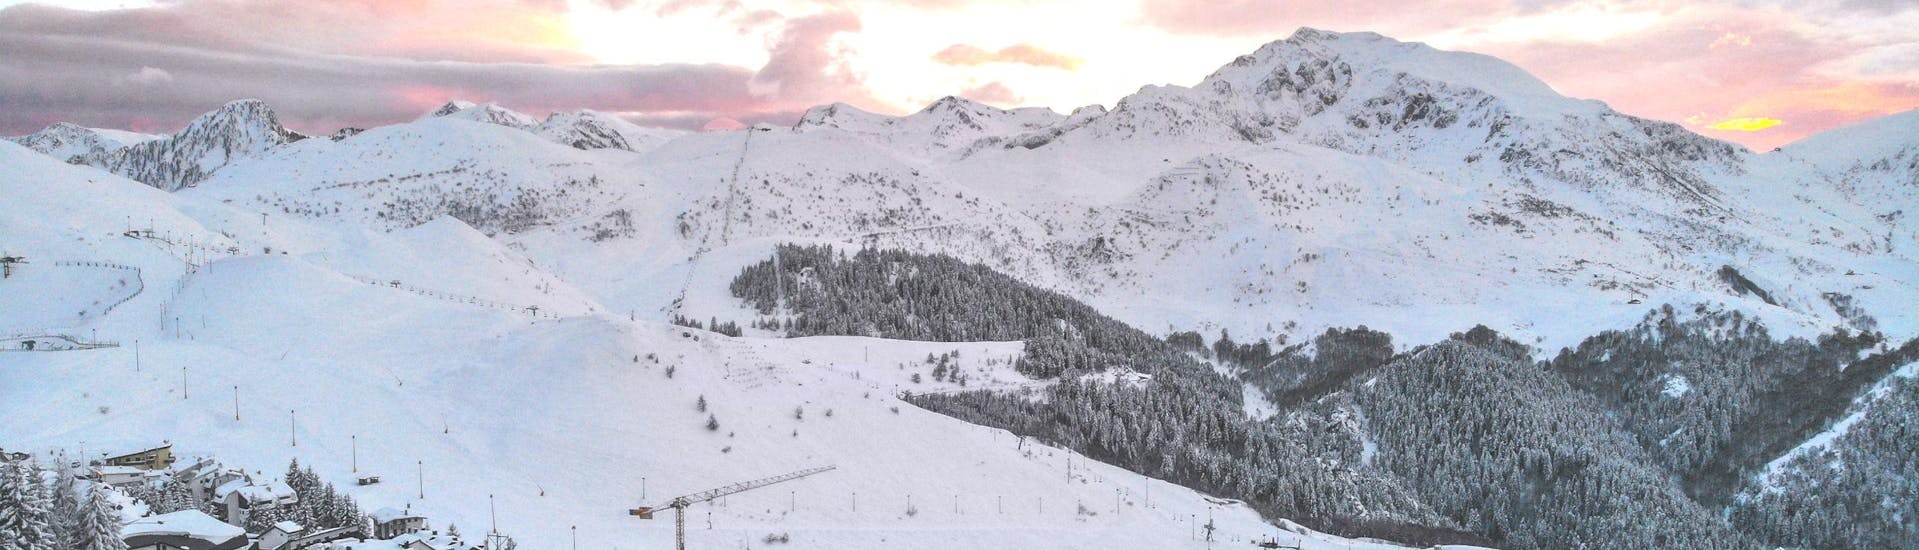 Ein Ausblick über die Skipisten des italienischen Skigebiets Prato Nevoso, auf denen die örtlichen Skischulen ihre Skikurse abhalten.